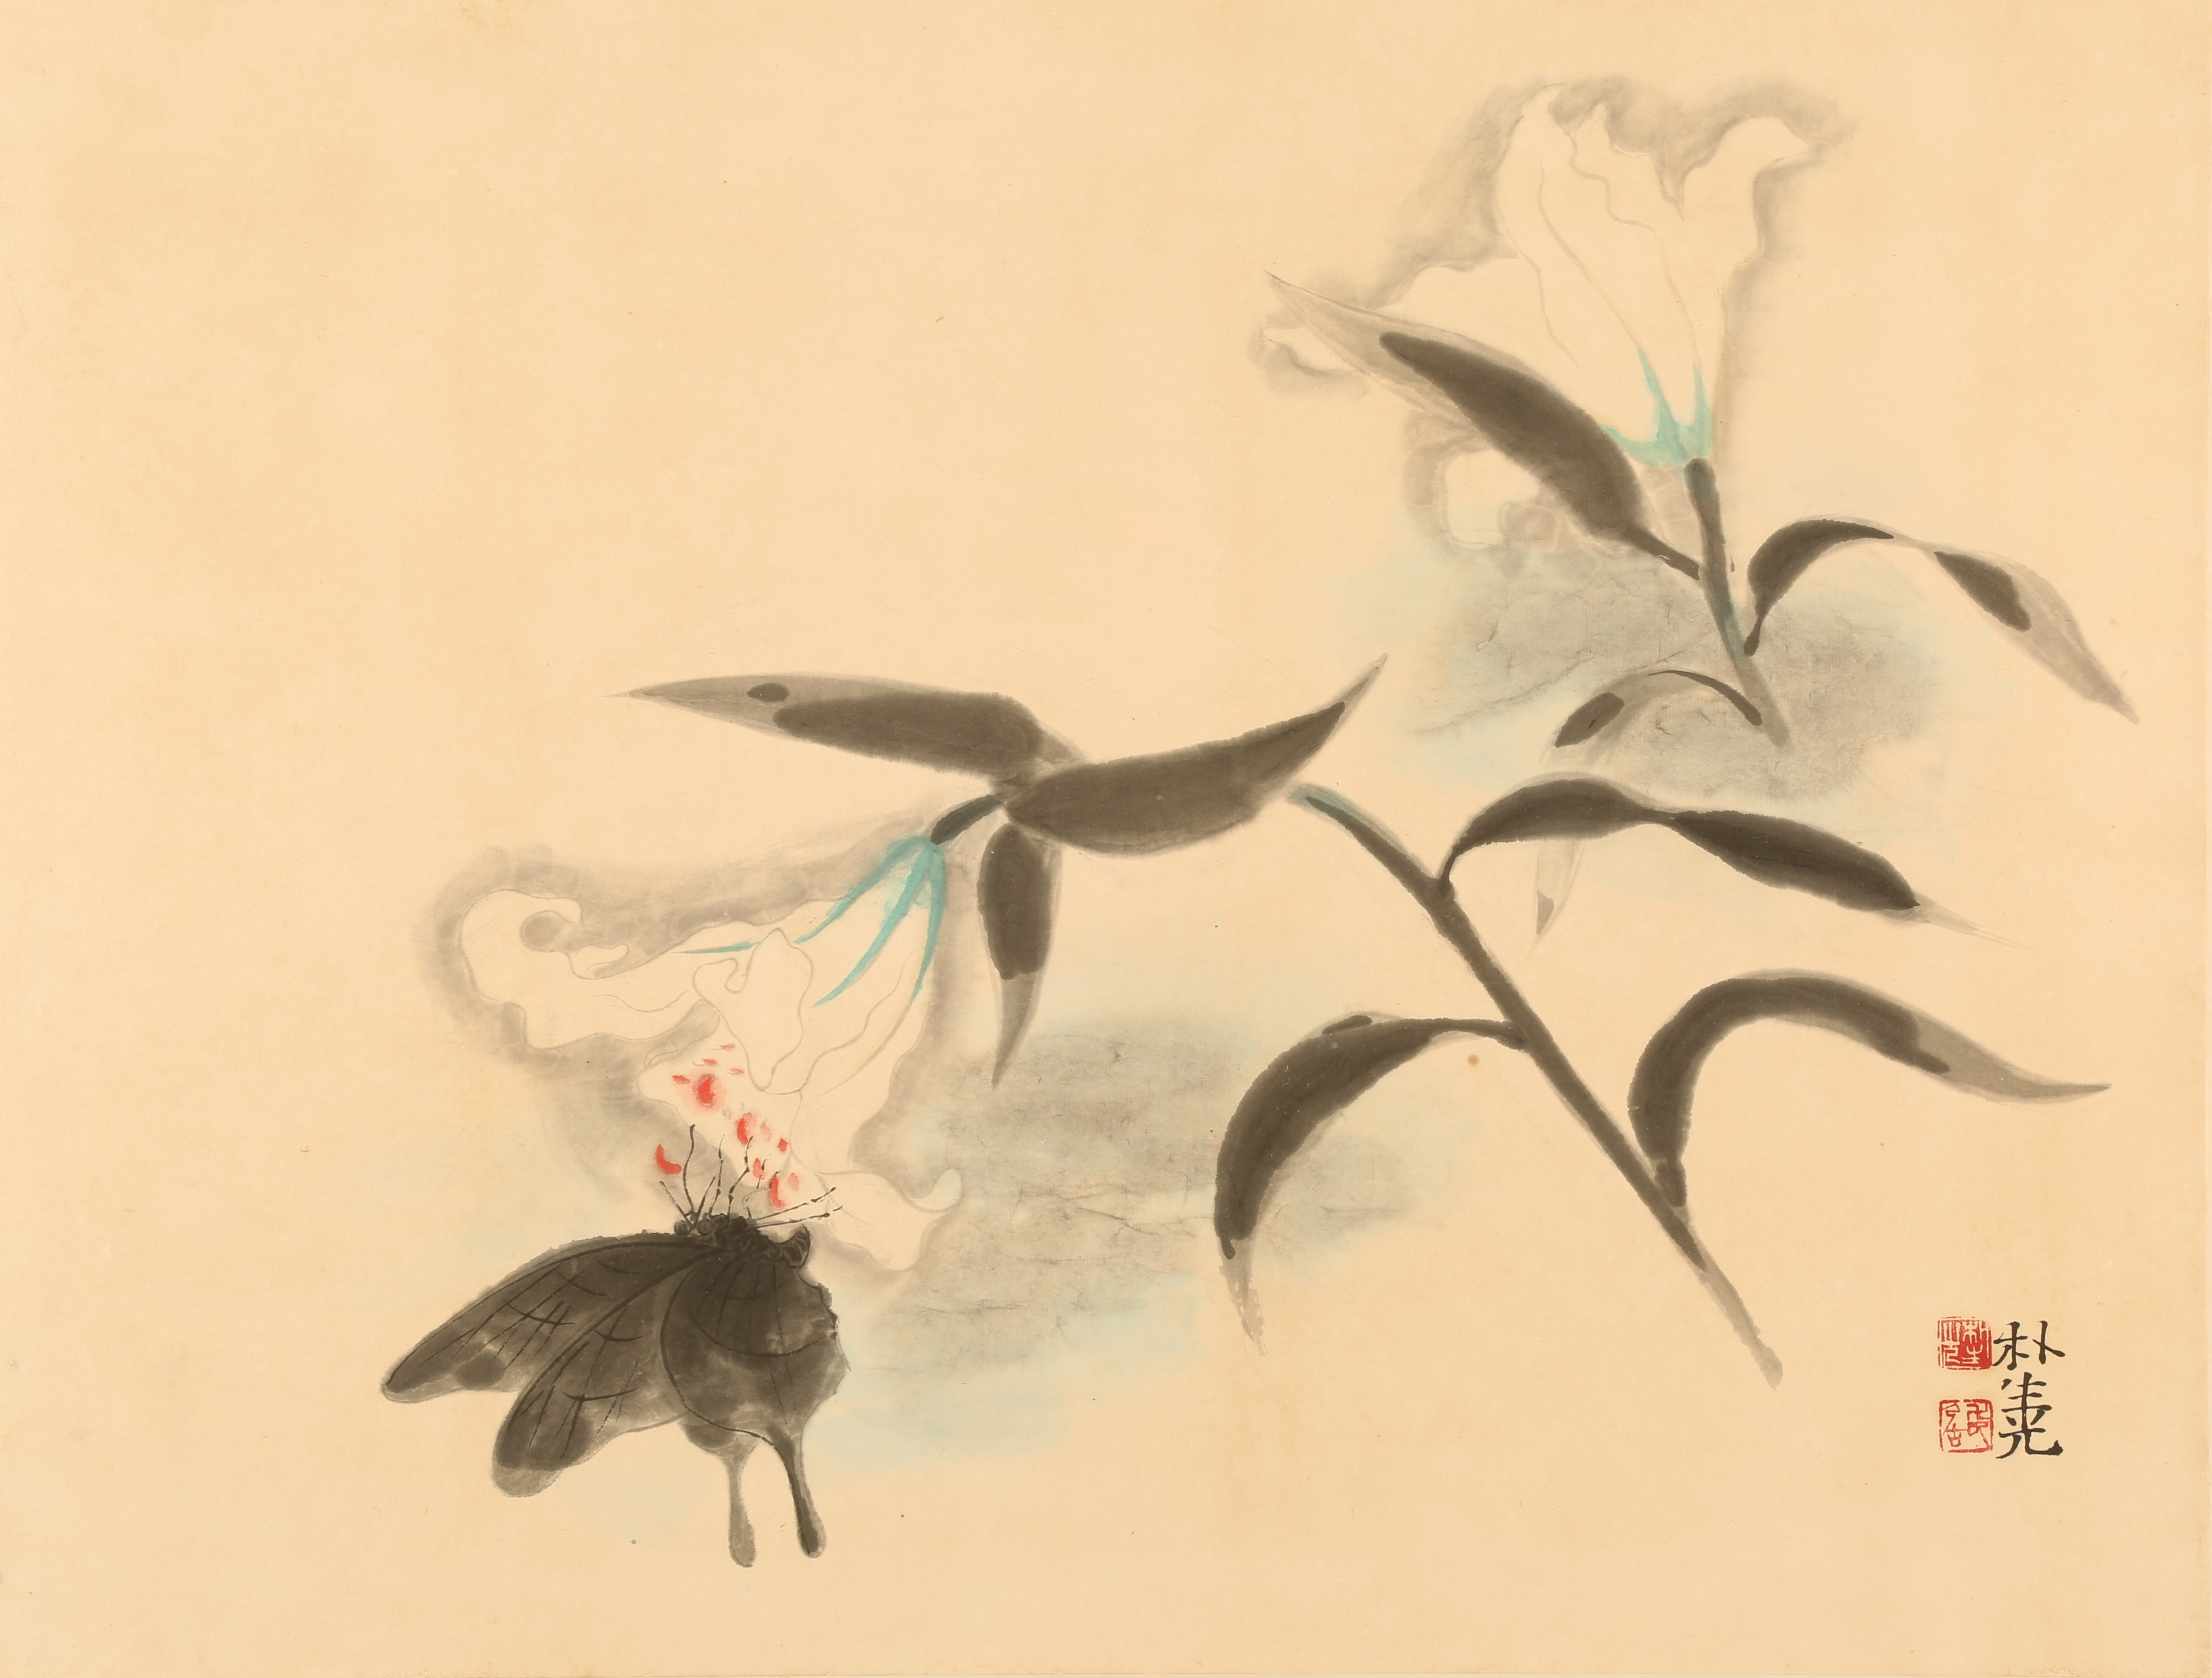 1.박생광,조충도(나비와나리꽃),1960년대,한지에채색,45x48.5cm.JPG